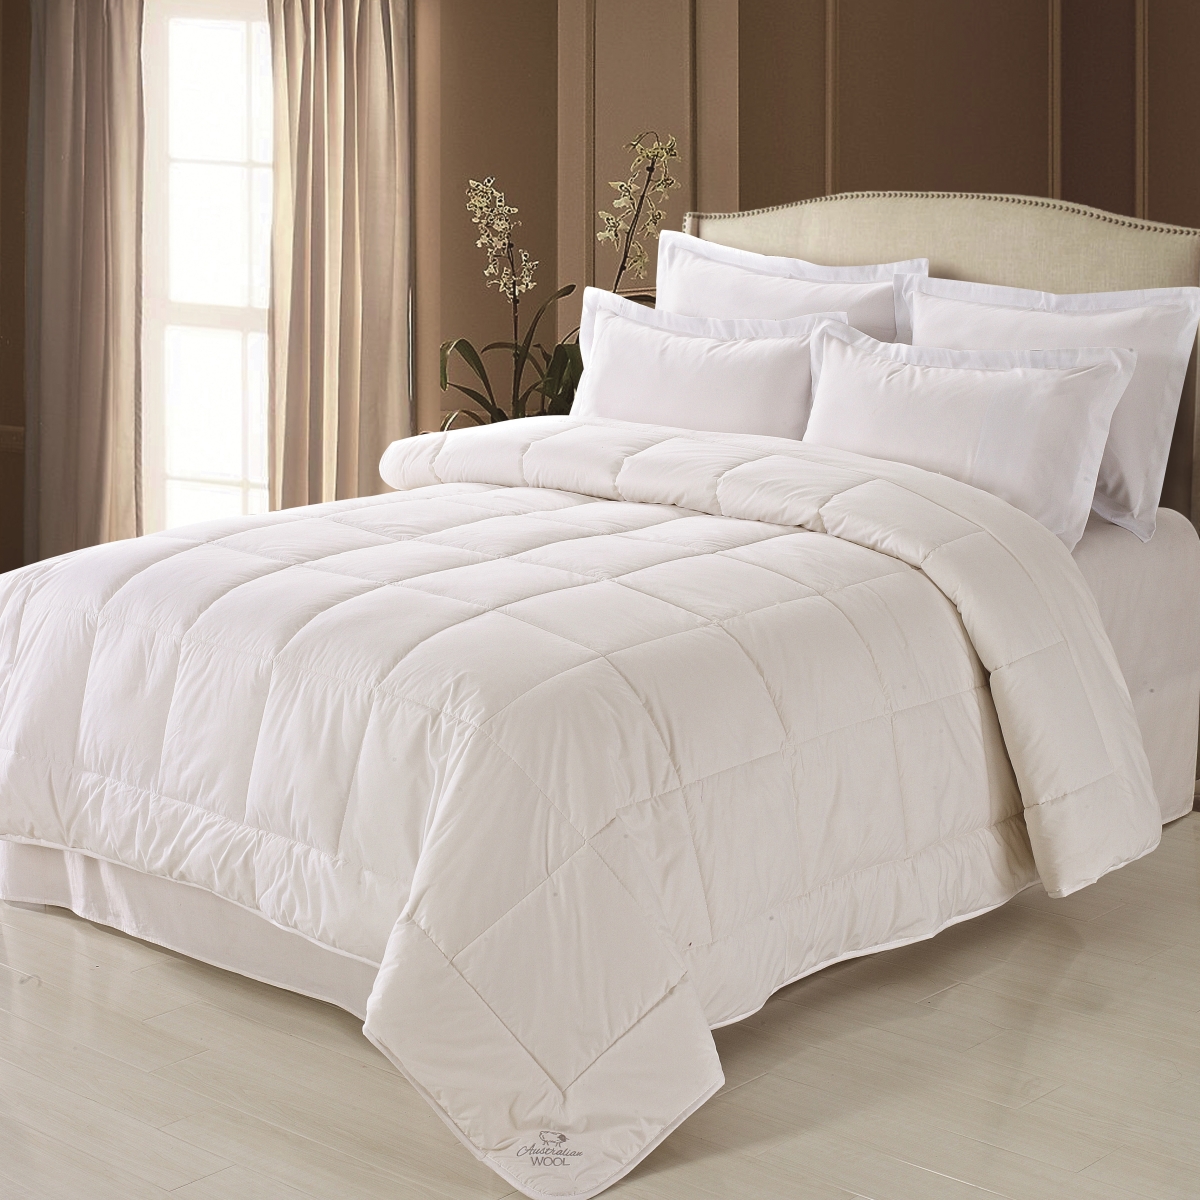 Fre611xxwhit04 Australian Wool & Cotton Comforter White